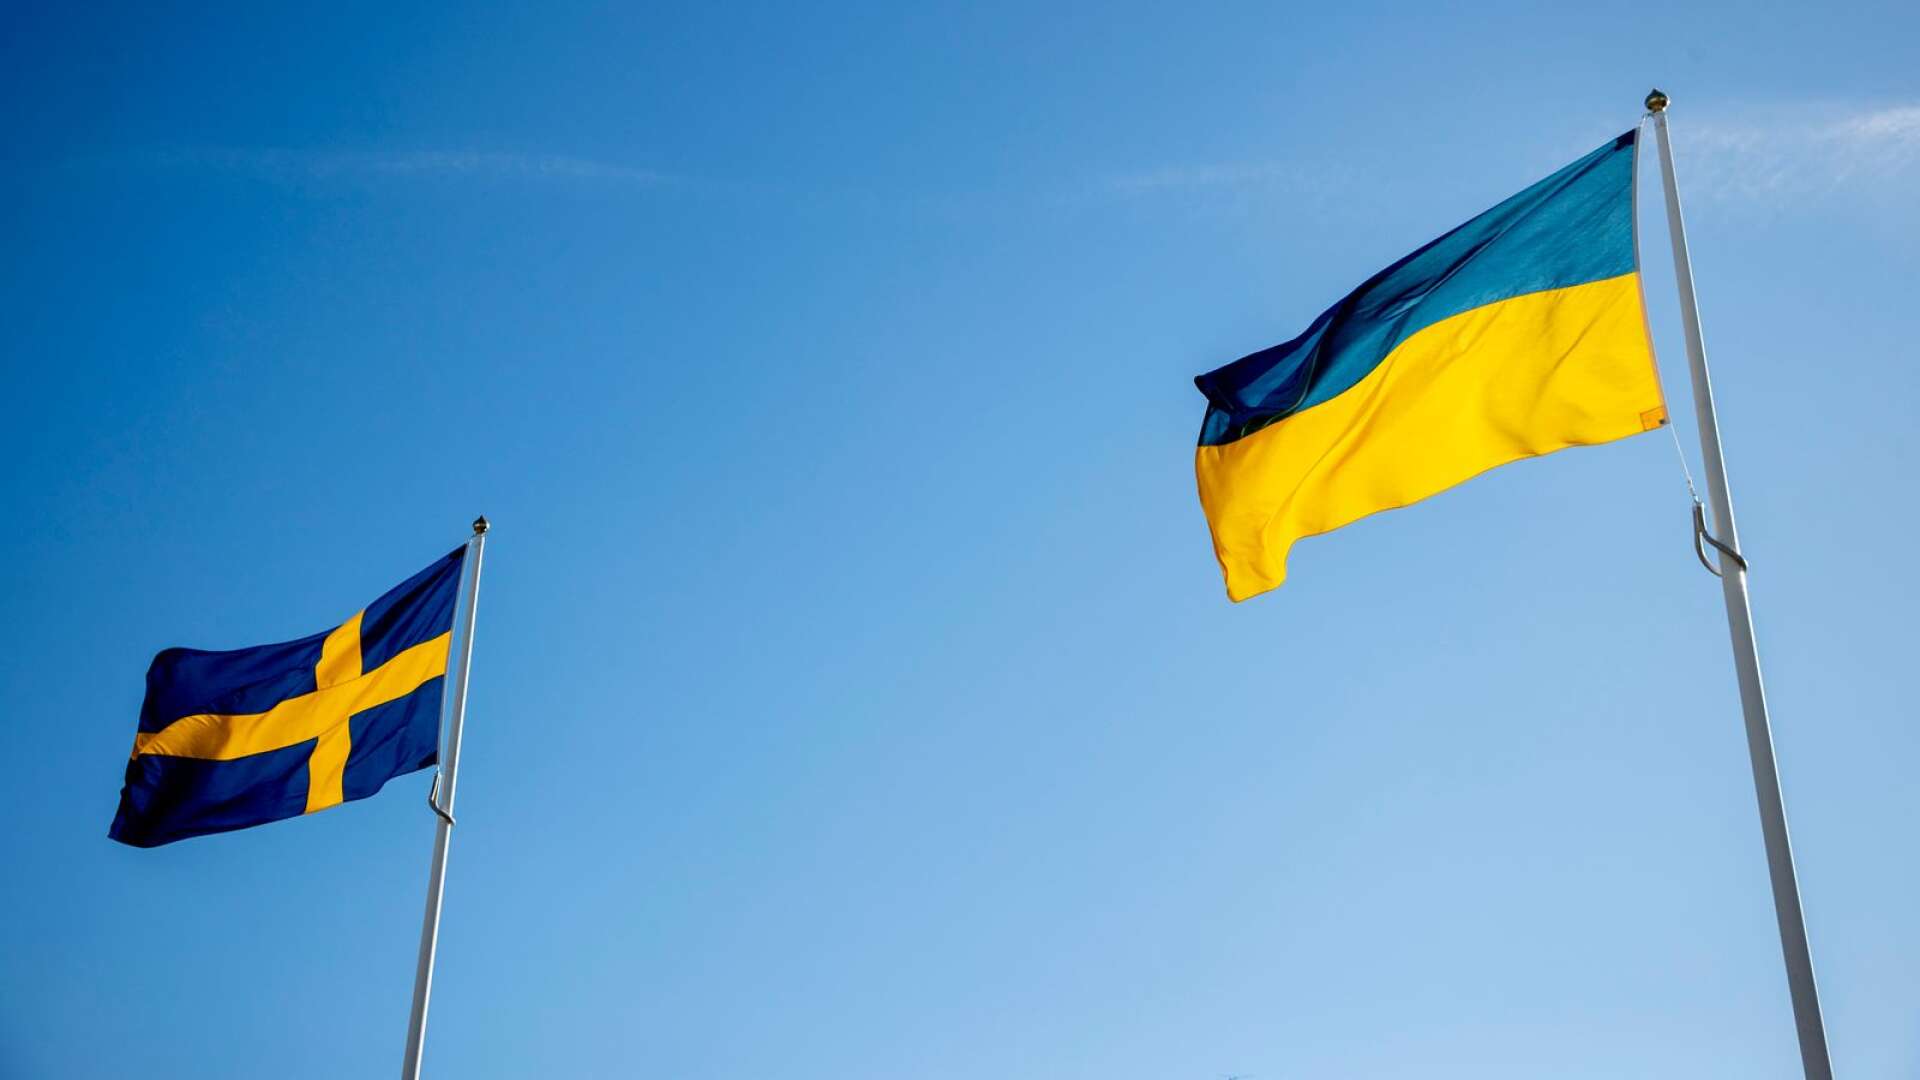 Kriget i Ukraina skapar oro även i Sverige och Åmål.